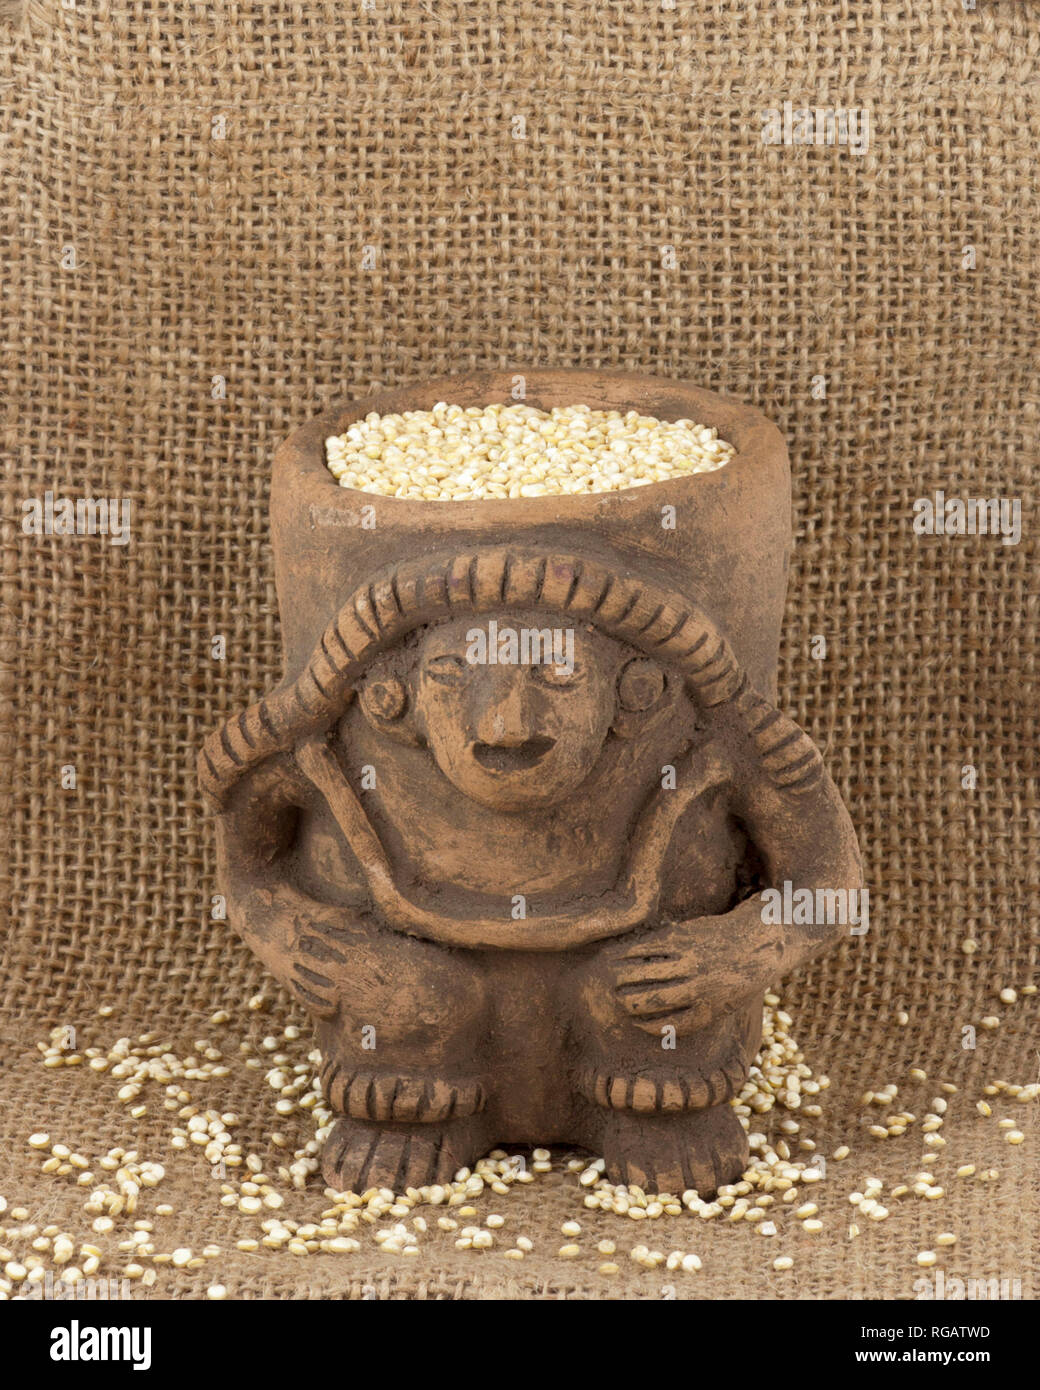 Golden organico Quinoa (Chenopodium quinoa) in Inca pentola di creta dalla provincia di Imbabura del nord dell'Ecuador Foto Stock